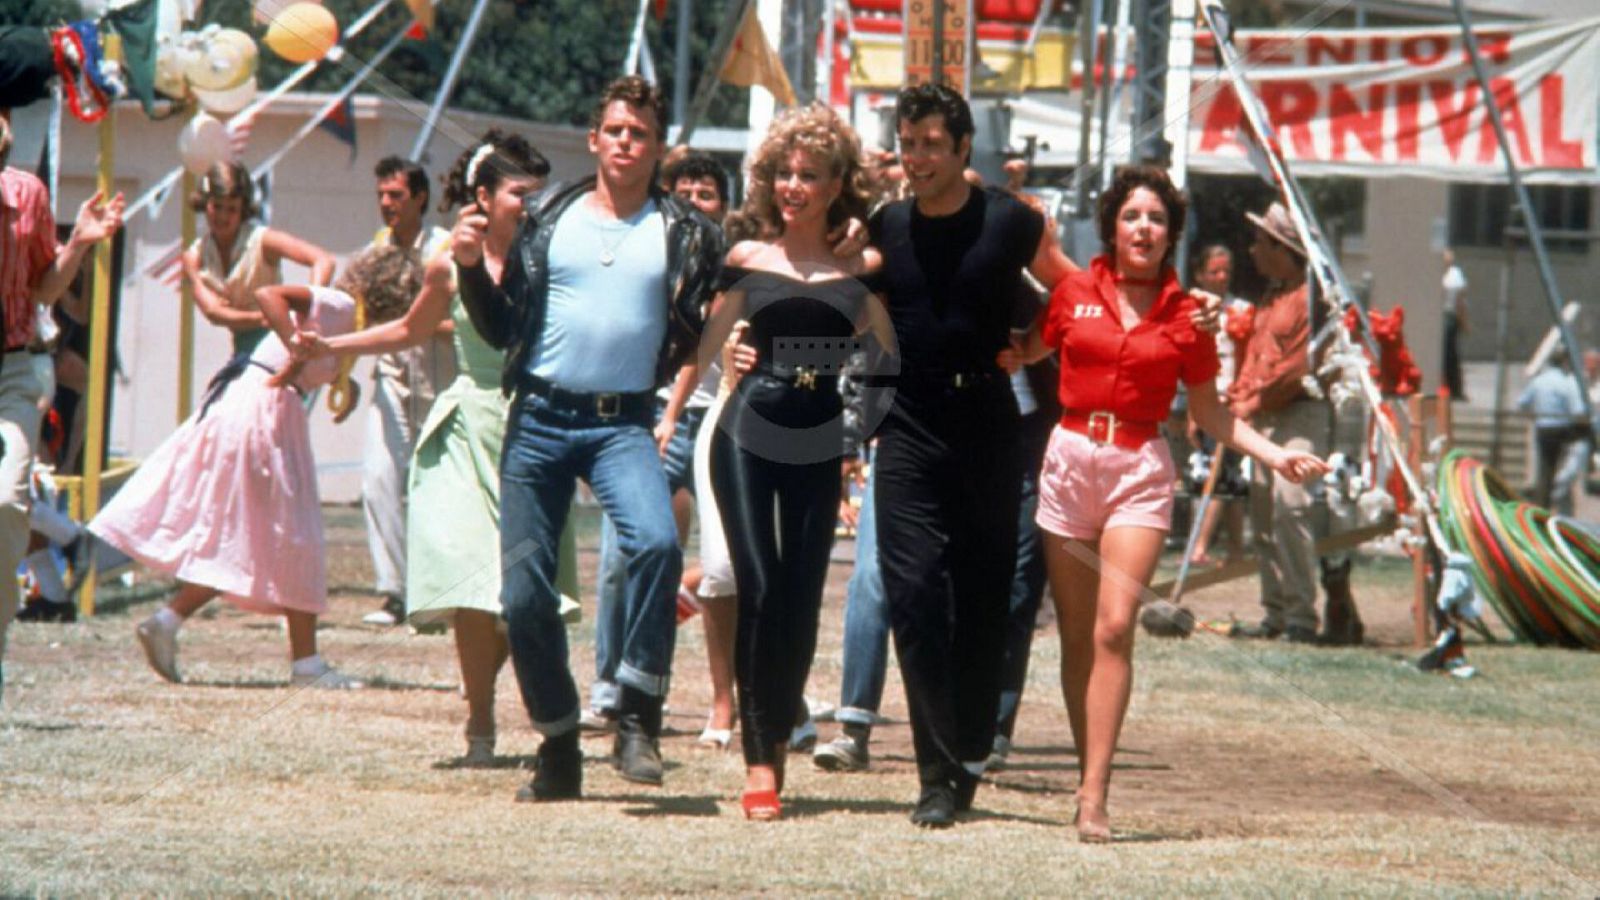 Sandy, Danny, Kenickie y Rizzo en "Grease", abrazados caminando